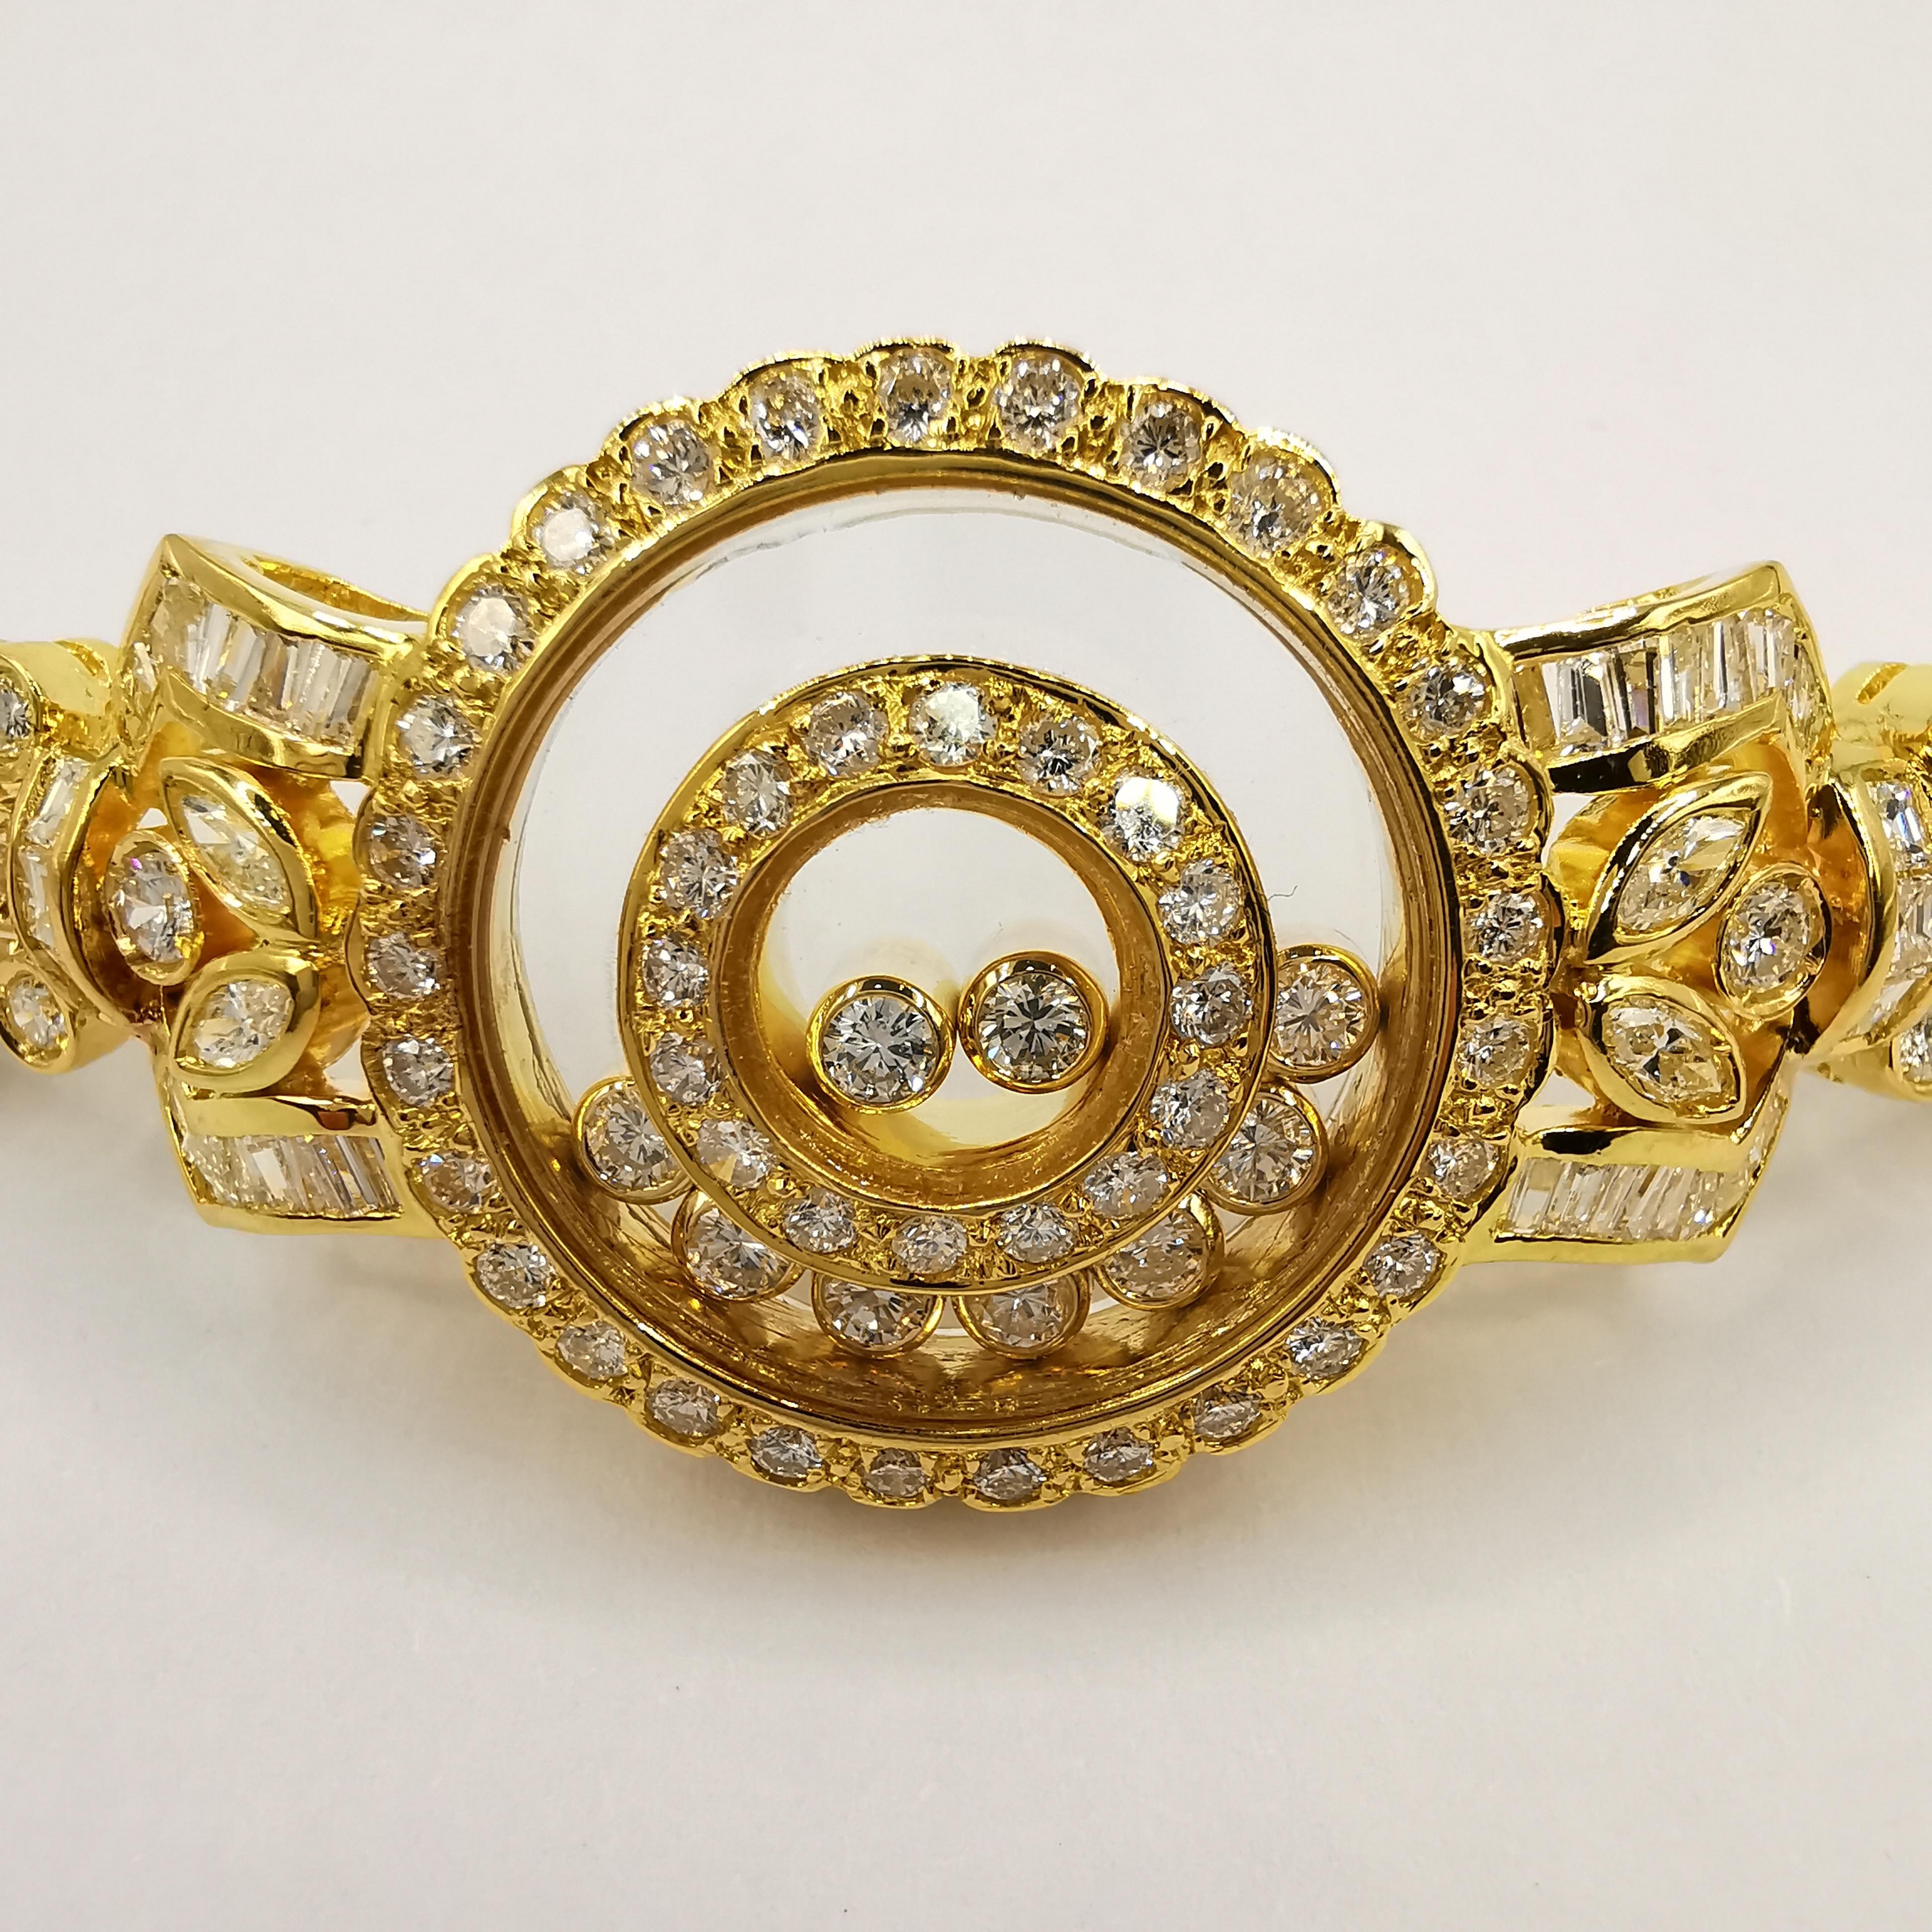 Dieses 5,42 Karat schwere Happy Diamond Armband aus 18 Karat Gelbgold ist ein aufwendiges Schmuckstück, das Eleganz und Raffinesse ausstrahlt. Das Herzstück besteht aus 9 beweglichen Diamanten mit rundem Schliff und einem Gesamtgewicht von ca. 0,45